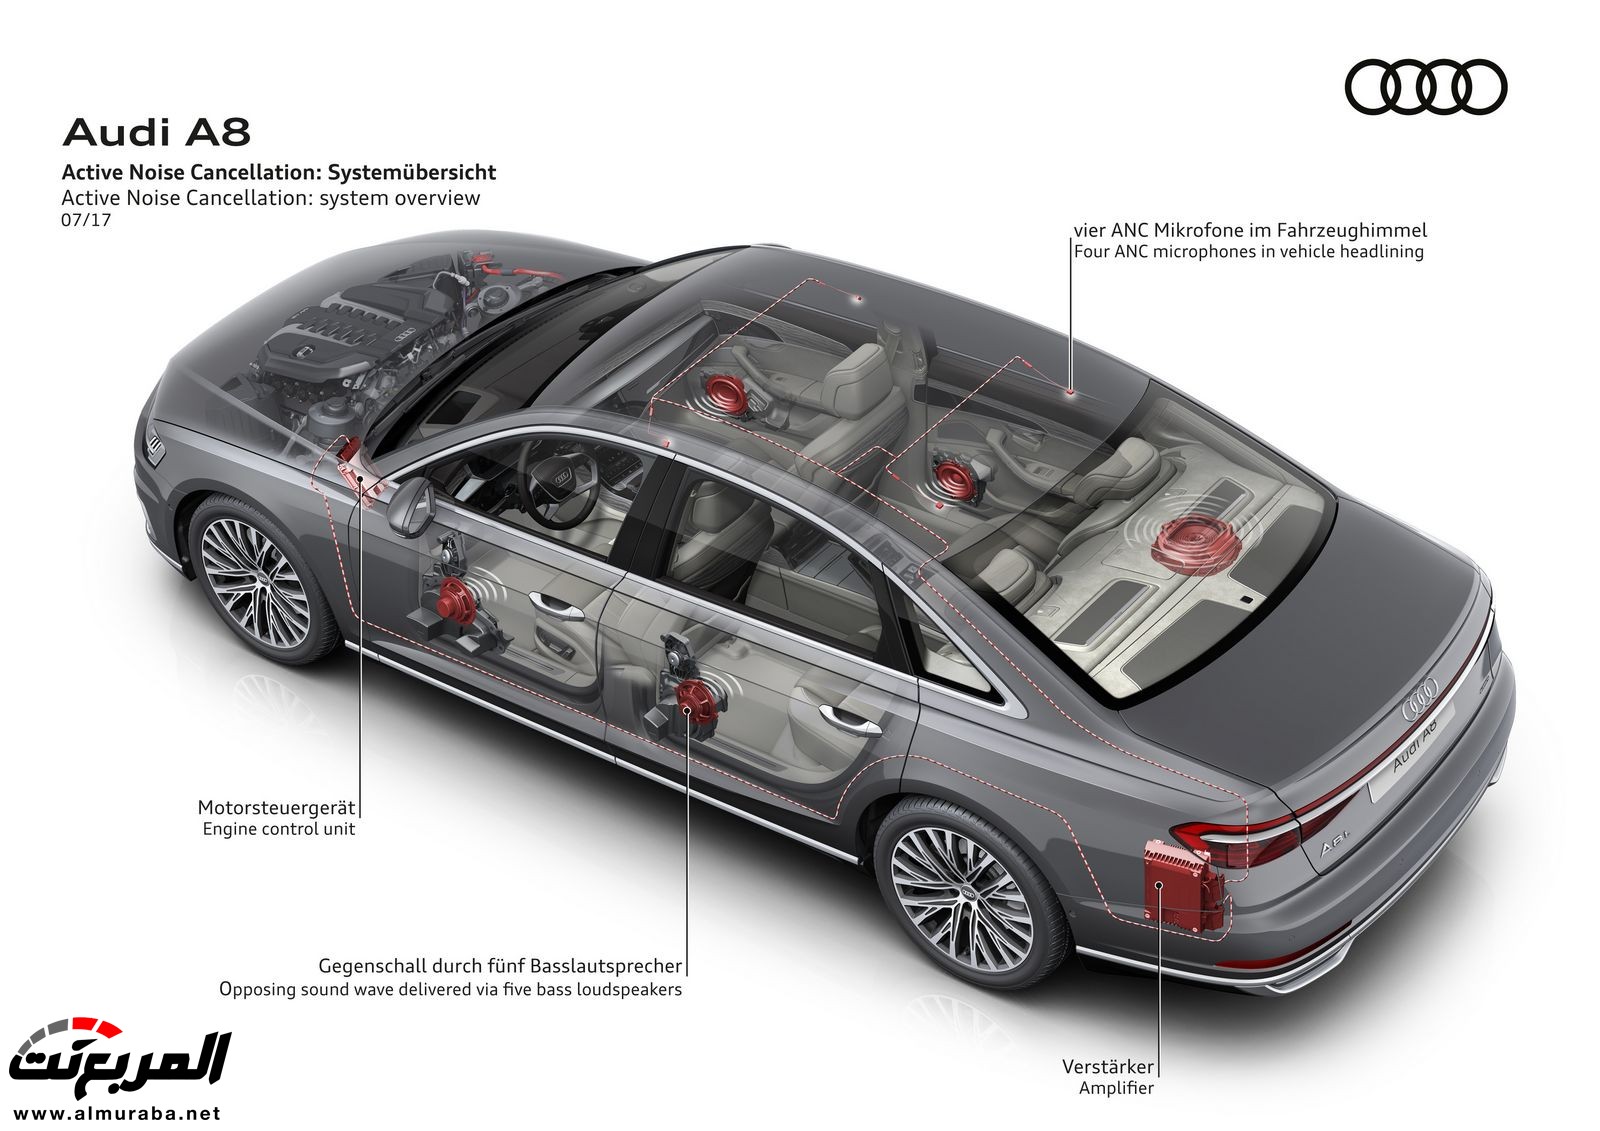 أودي A8 2018 الجديدة كلياً تكشف نفسها بتصميم وتقنيات متطورة "معلومات + 100 صورة" Audi A8 80